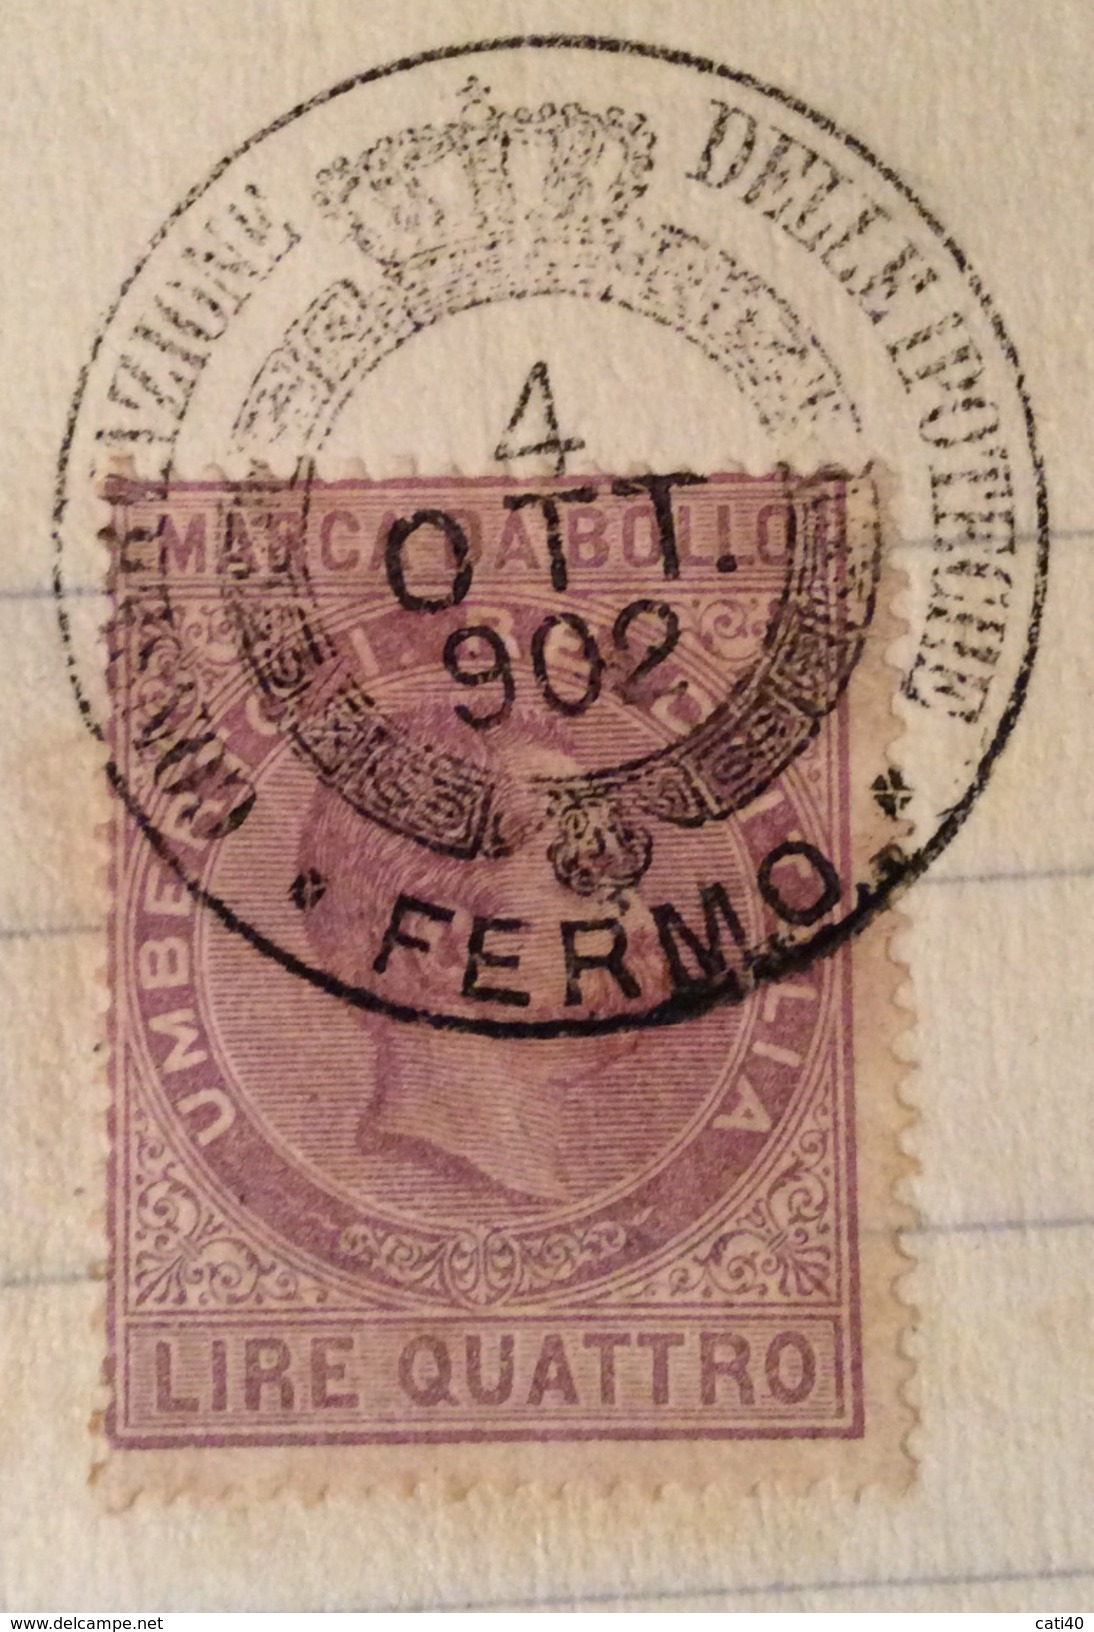 MARCA DA BOLLO UMBERTO LIRE QUATTRO SU DOCUMENTO COMPLETO FERMO 4/10/1902 R - Fiscales